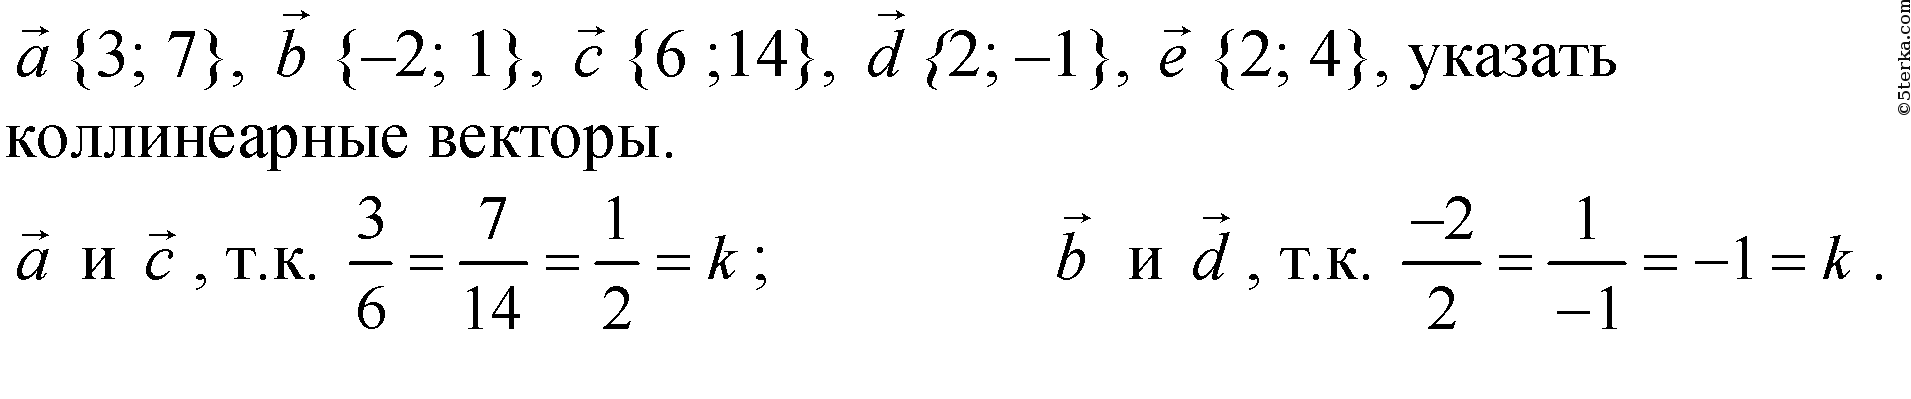 Даны векторы а 3 5 6. Укажите пару коллинеарных векторов. 1+1=2 Вектор. 1 2 3 Вектор. Вектор 1 4 3.